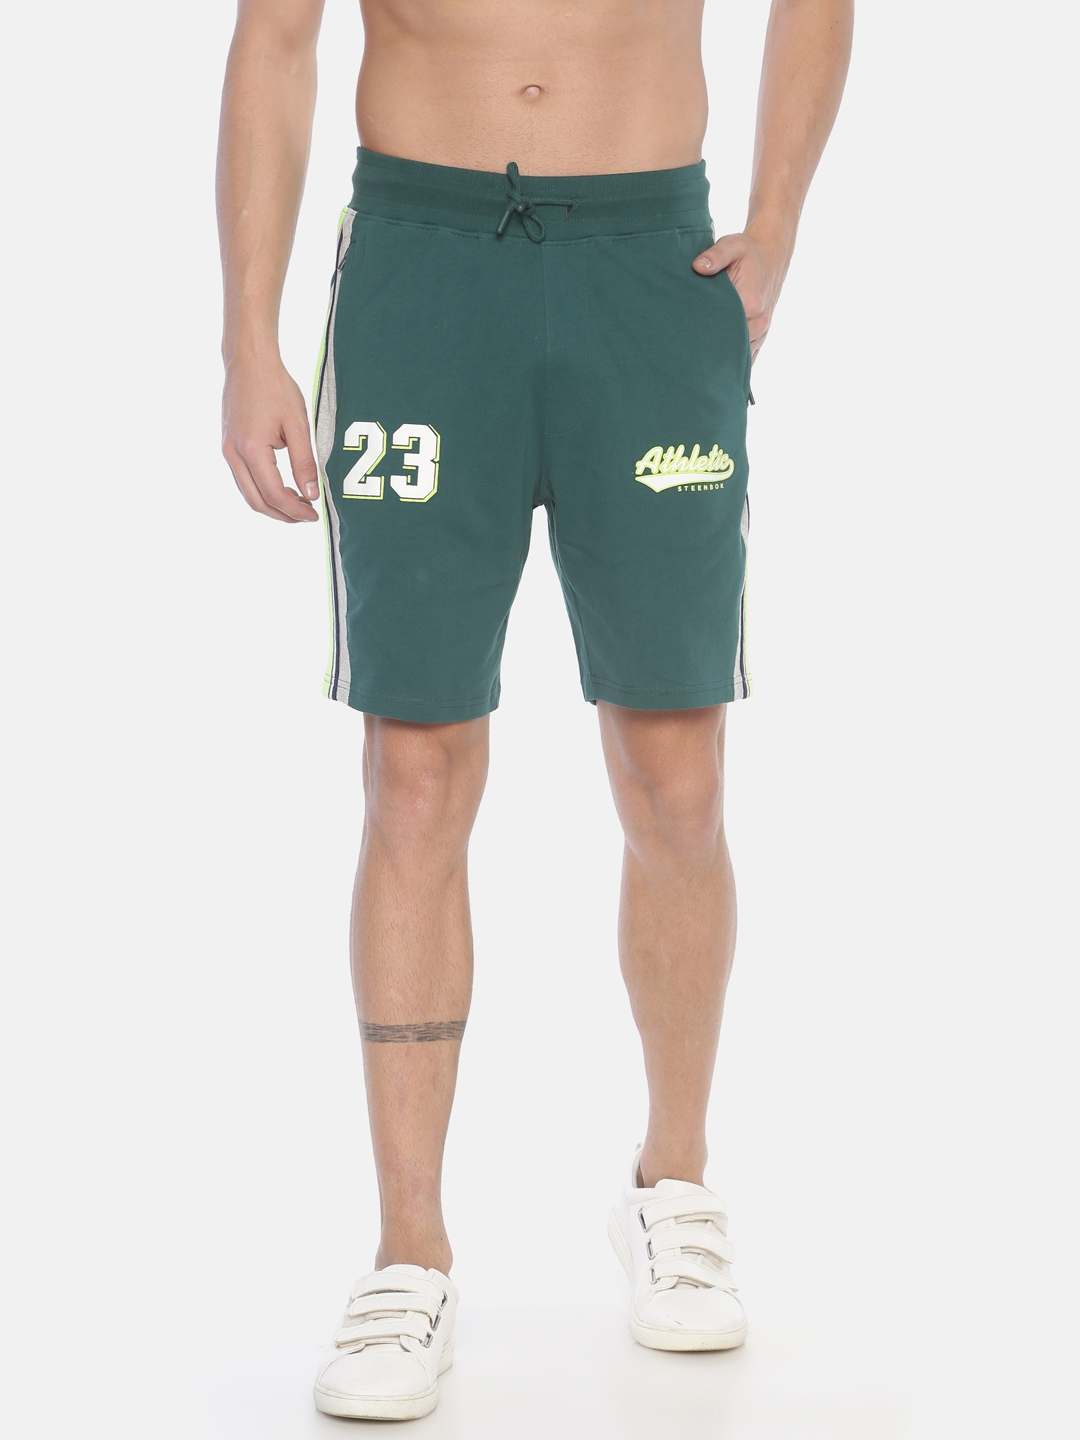 Steenbok | Steenbok Men's Dark Green Shorts 0